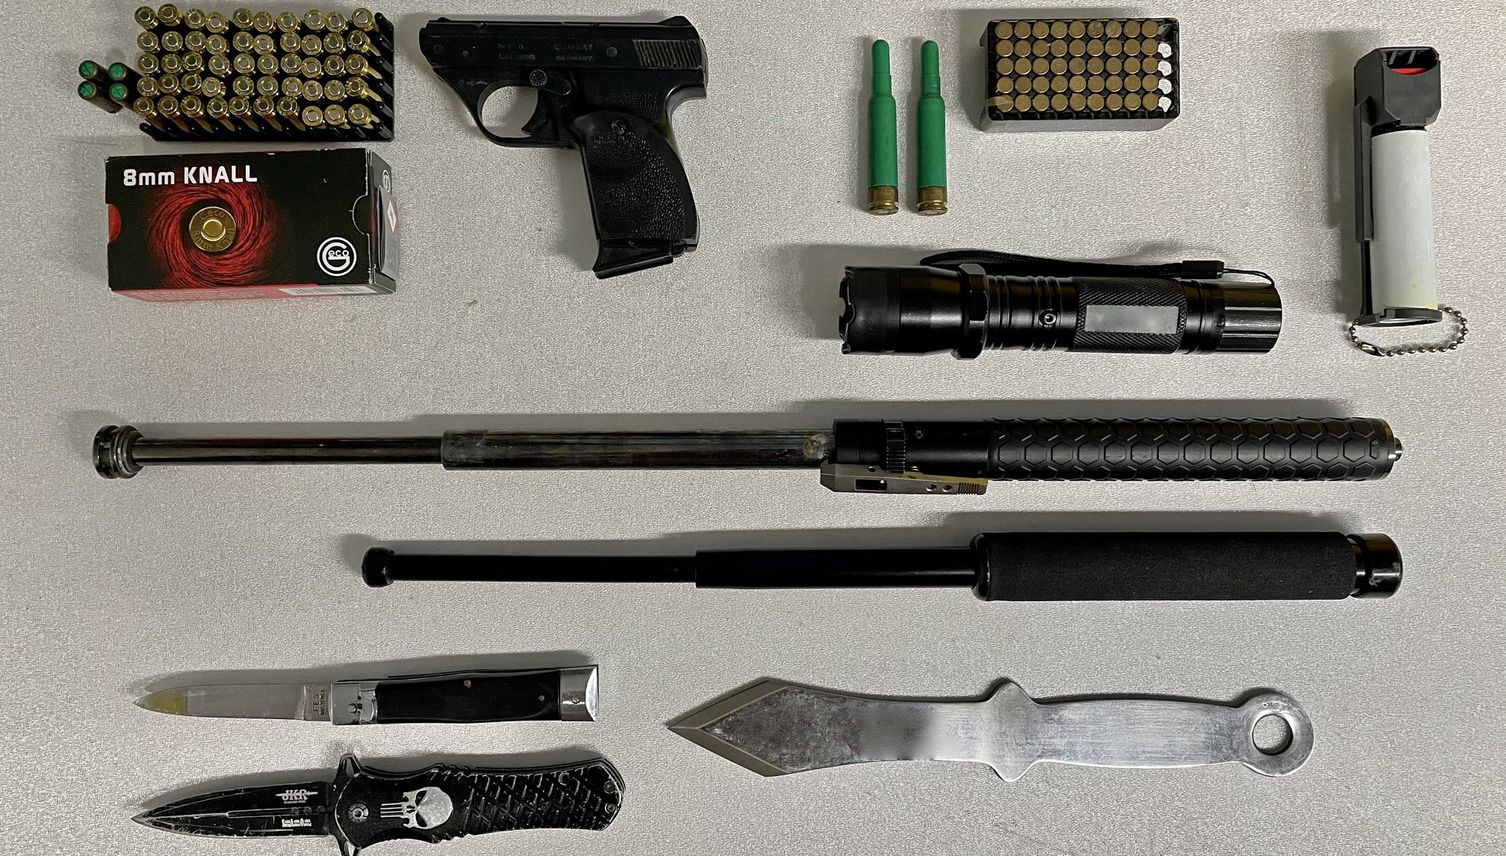 Pistole und 12 Kilo Drogen: Dealer in Ebikon aufgeflogen